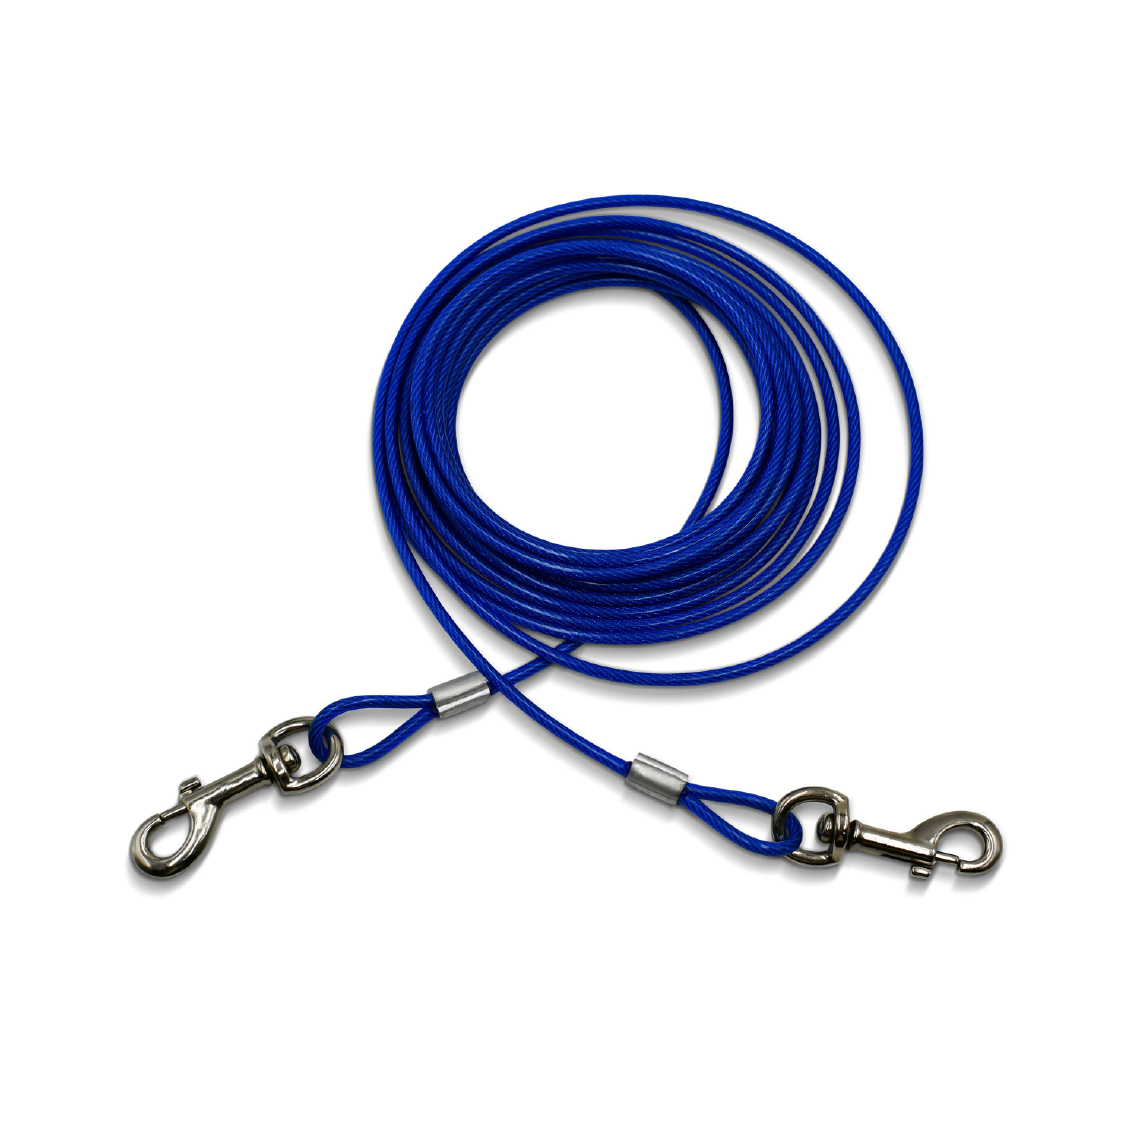 Alice'S Garden - Câble gainé de 6m de long et 5mm d’épaisseur bleu, avec mousquetons - Laisse pour chien